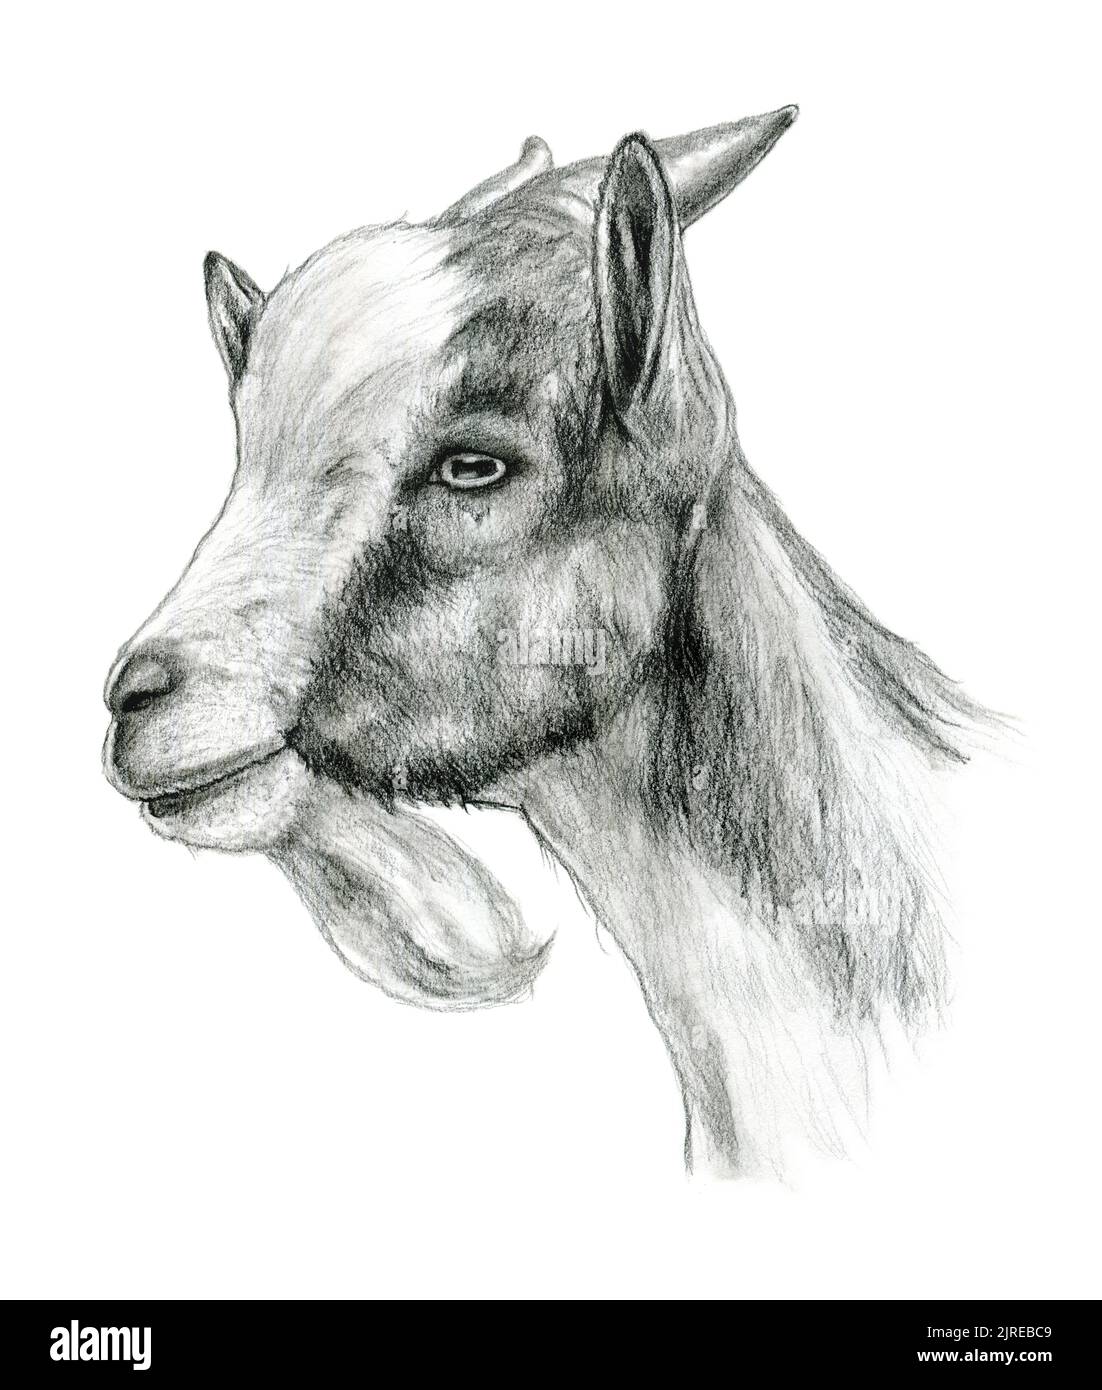 Dessin au crayon de la tête d'une chèvre. Illustration traditionnelle sur papier. Banque D'Images